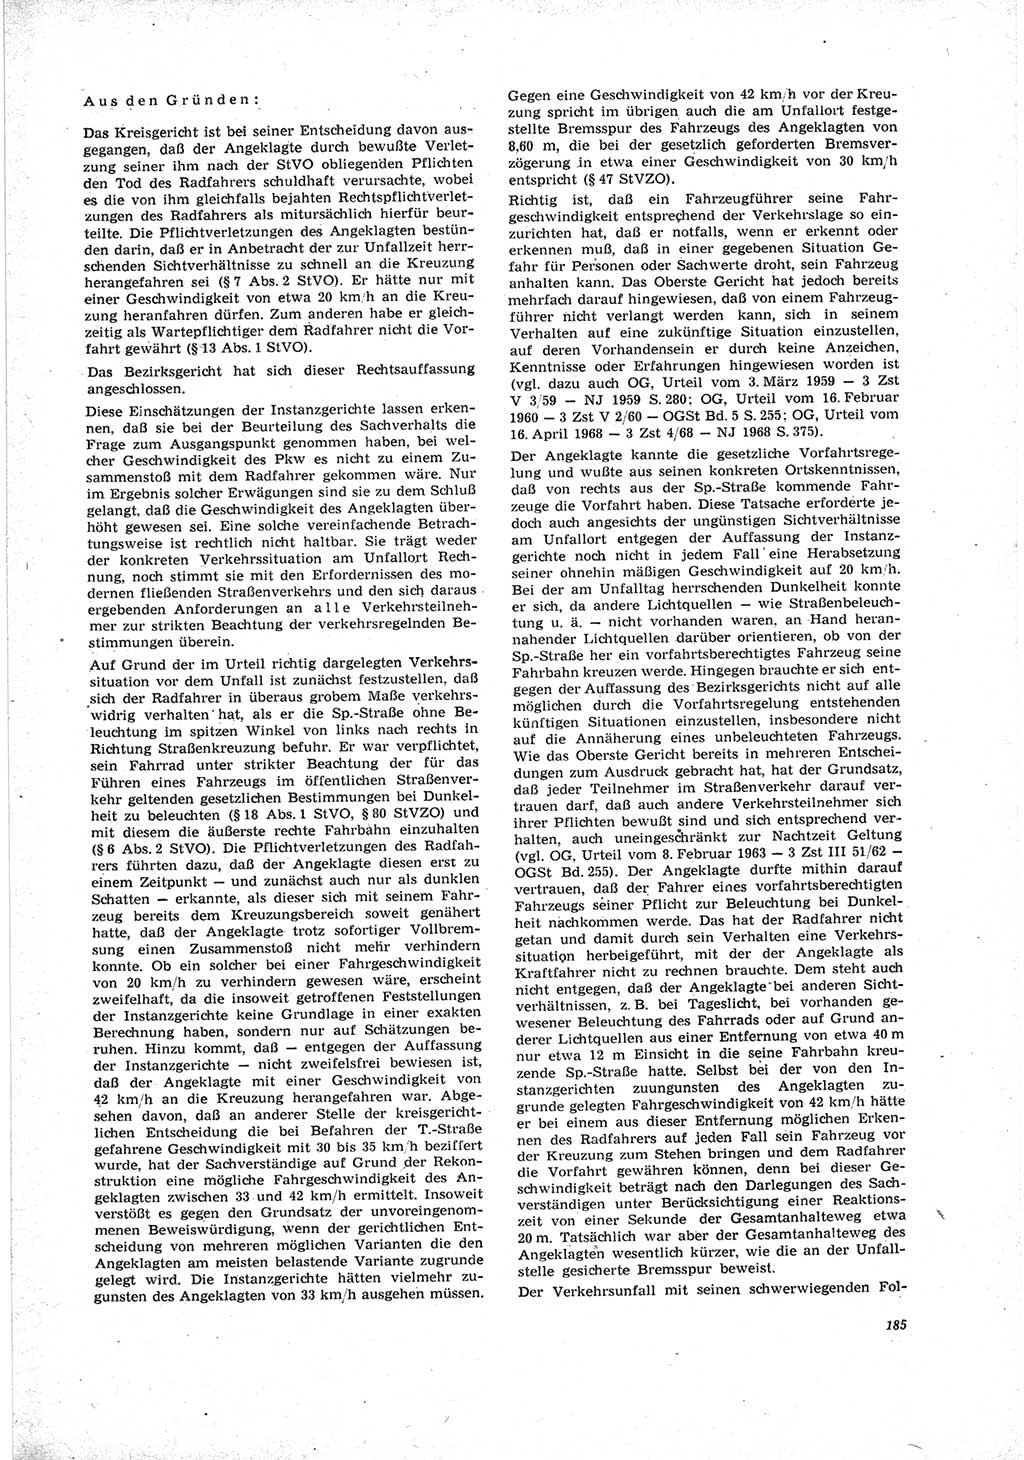 Neue Justiz (NJ), Zeitschrift für Recht und Rechtswissenschaft [Deutsche Demokratische Republik (DDR)], 23. Jahrgang 1969, Seite 185 (NJ DDR 1969, S. 185)